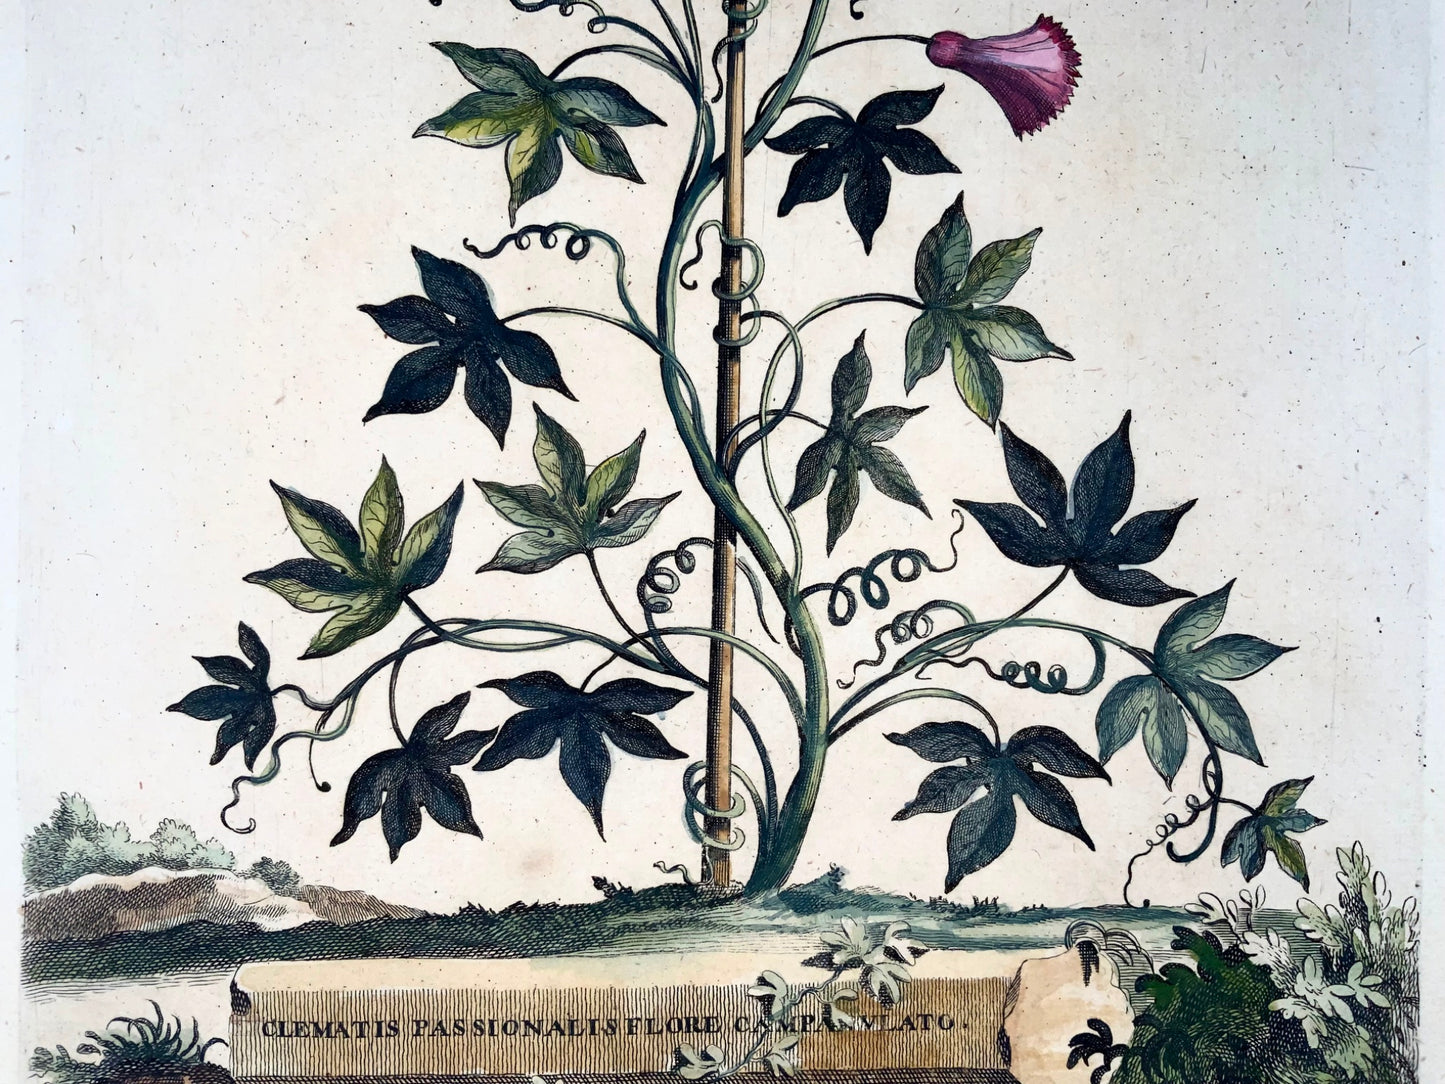 1696 Clematis Passionalis, grand folio, botanique, Abraham Munting, grand folio